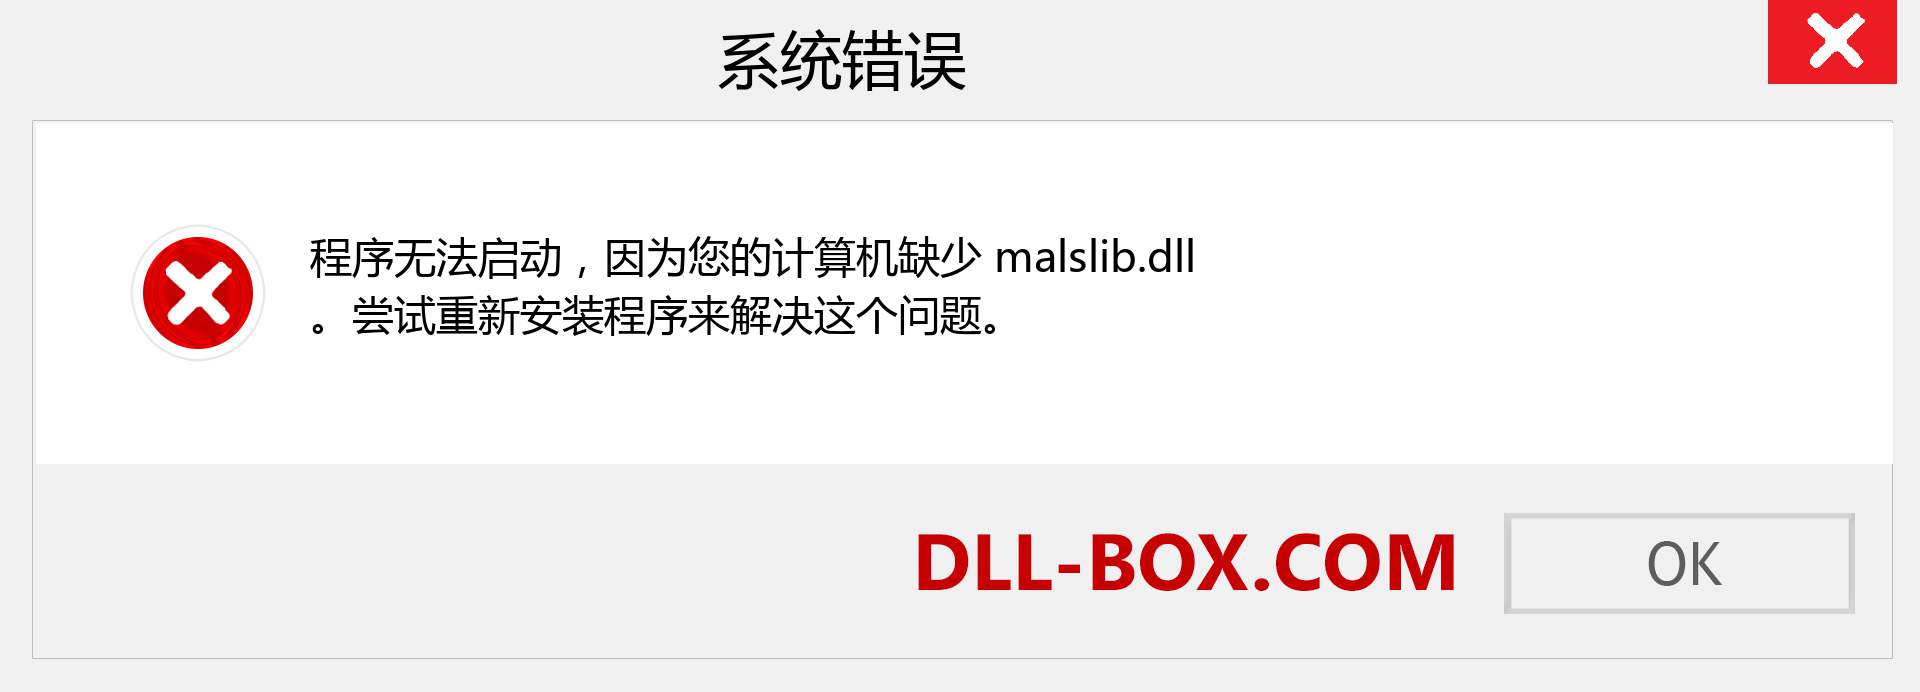 malslib.dll 文件丢失？。 适用于 Windows 7、8、10 的下载 - 修复 Windows、照片、图像上的 malslib dll 丢失错误